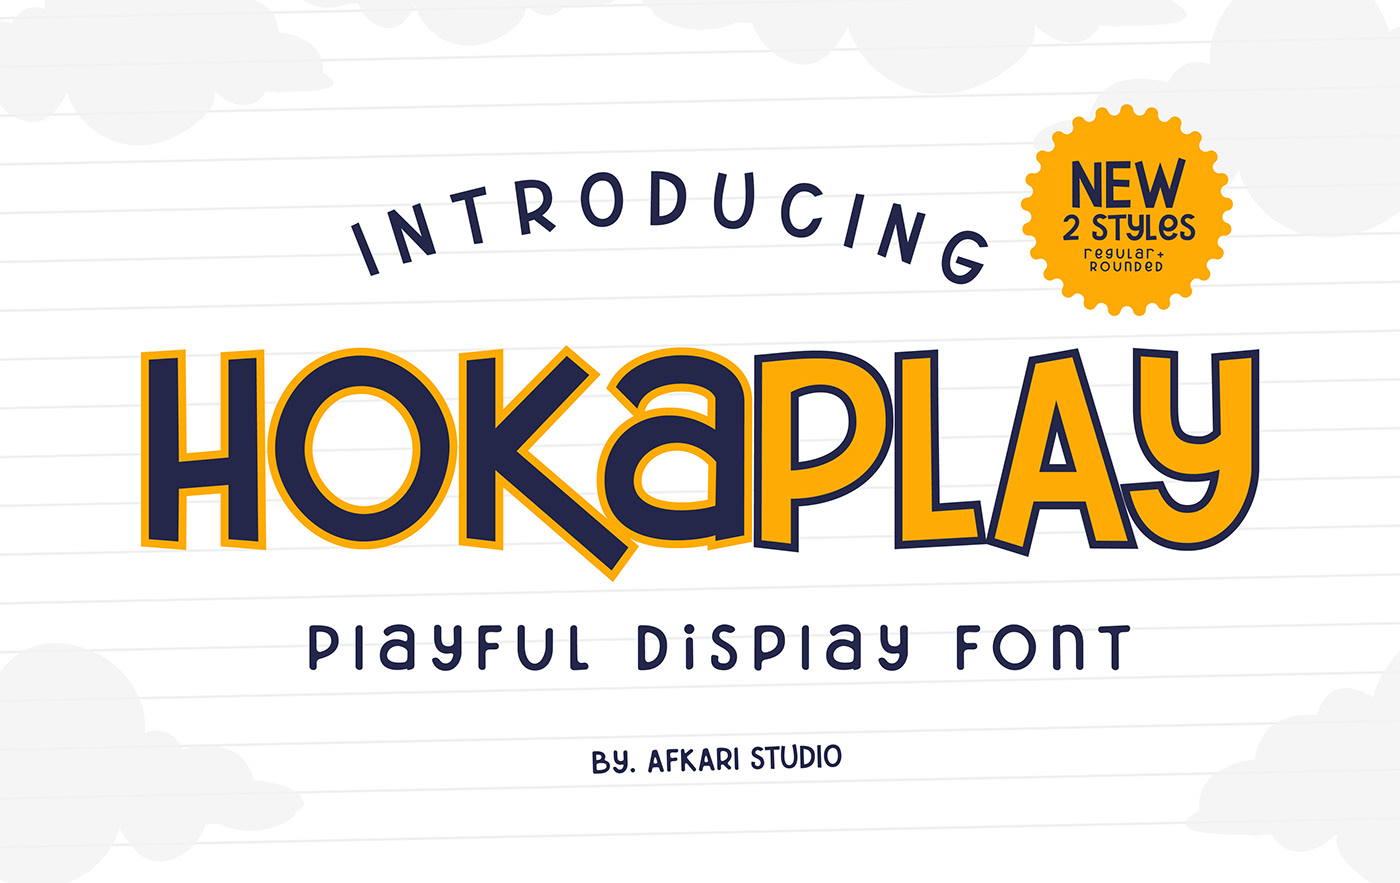 playful display PLAYFUL DISPLAY FONT playful font